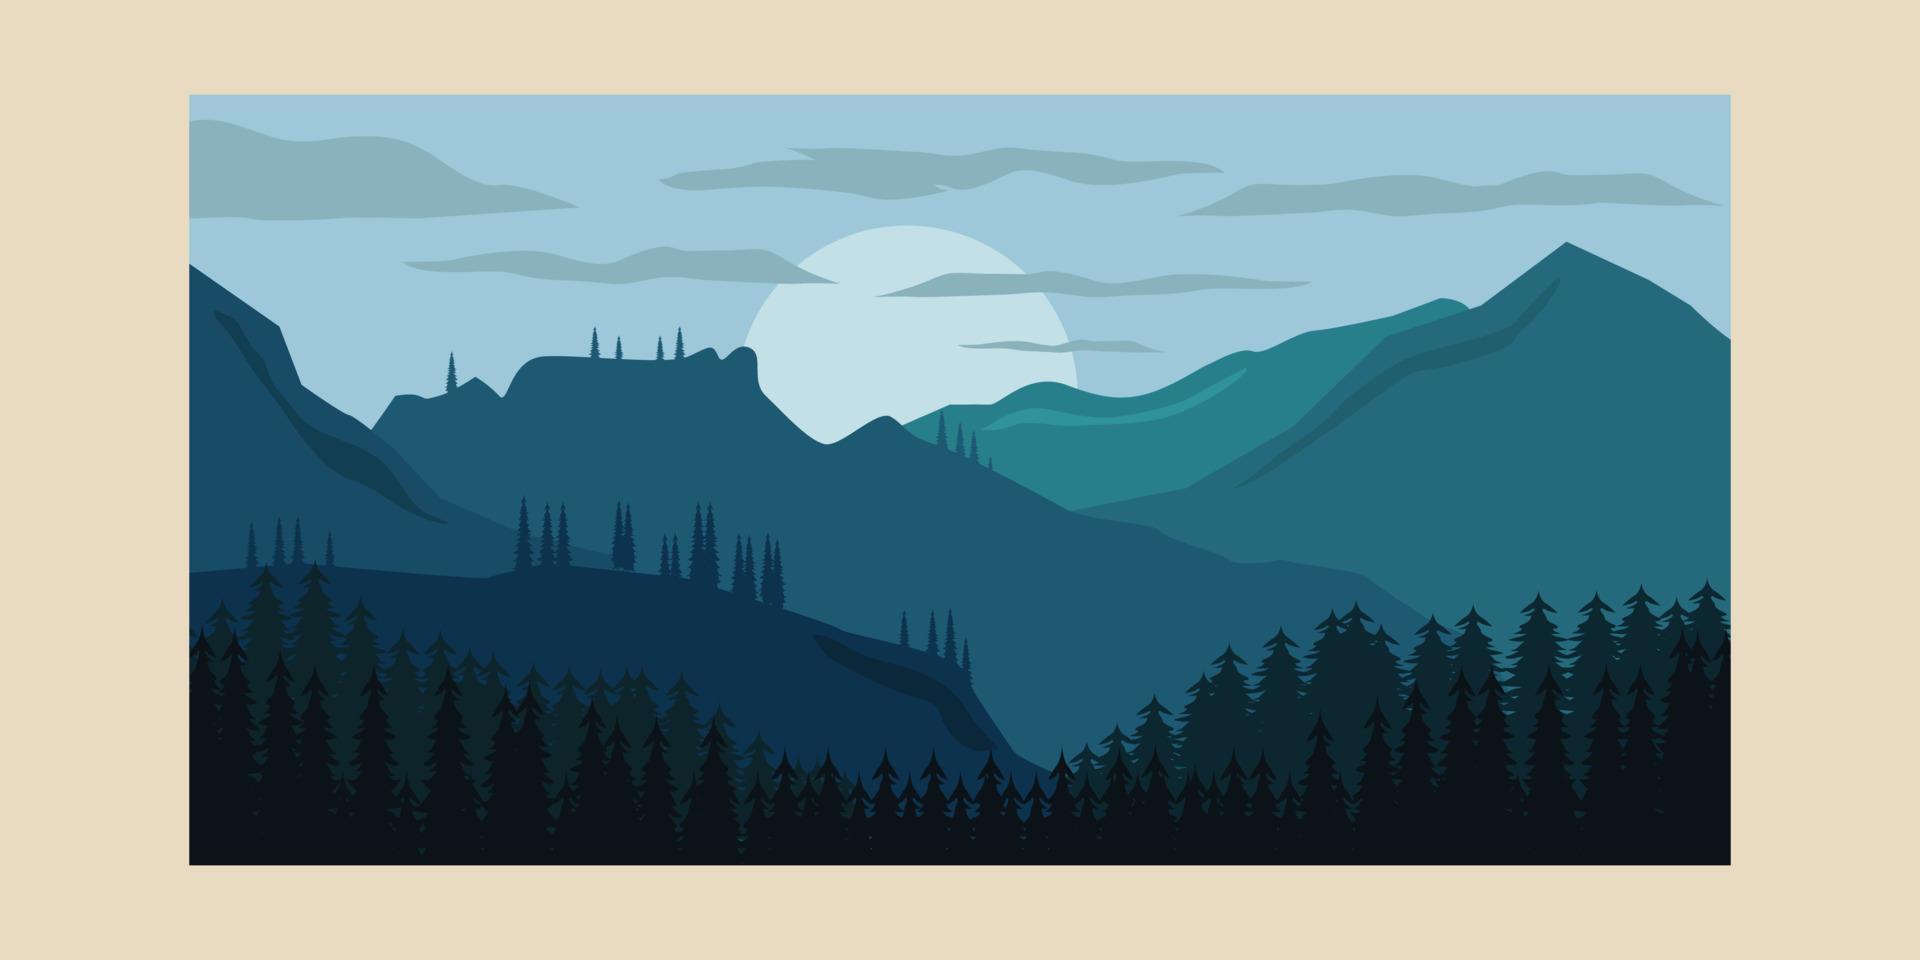 Landschaftsgebirgsweinleseplakat, Kiefernwaldhintergrund-Illustrationsdesign vektor